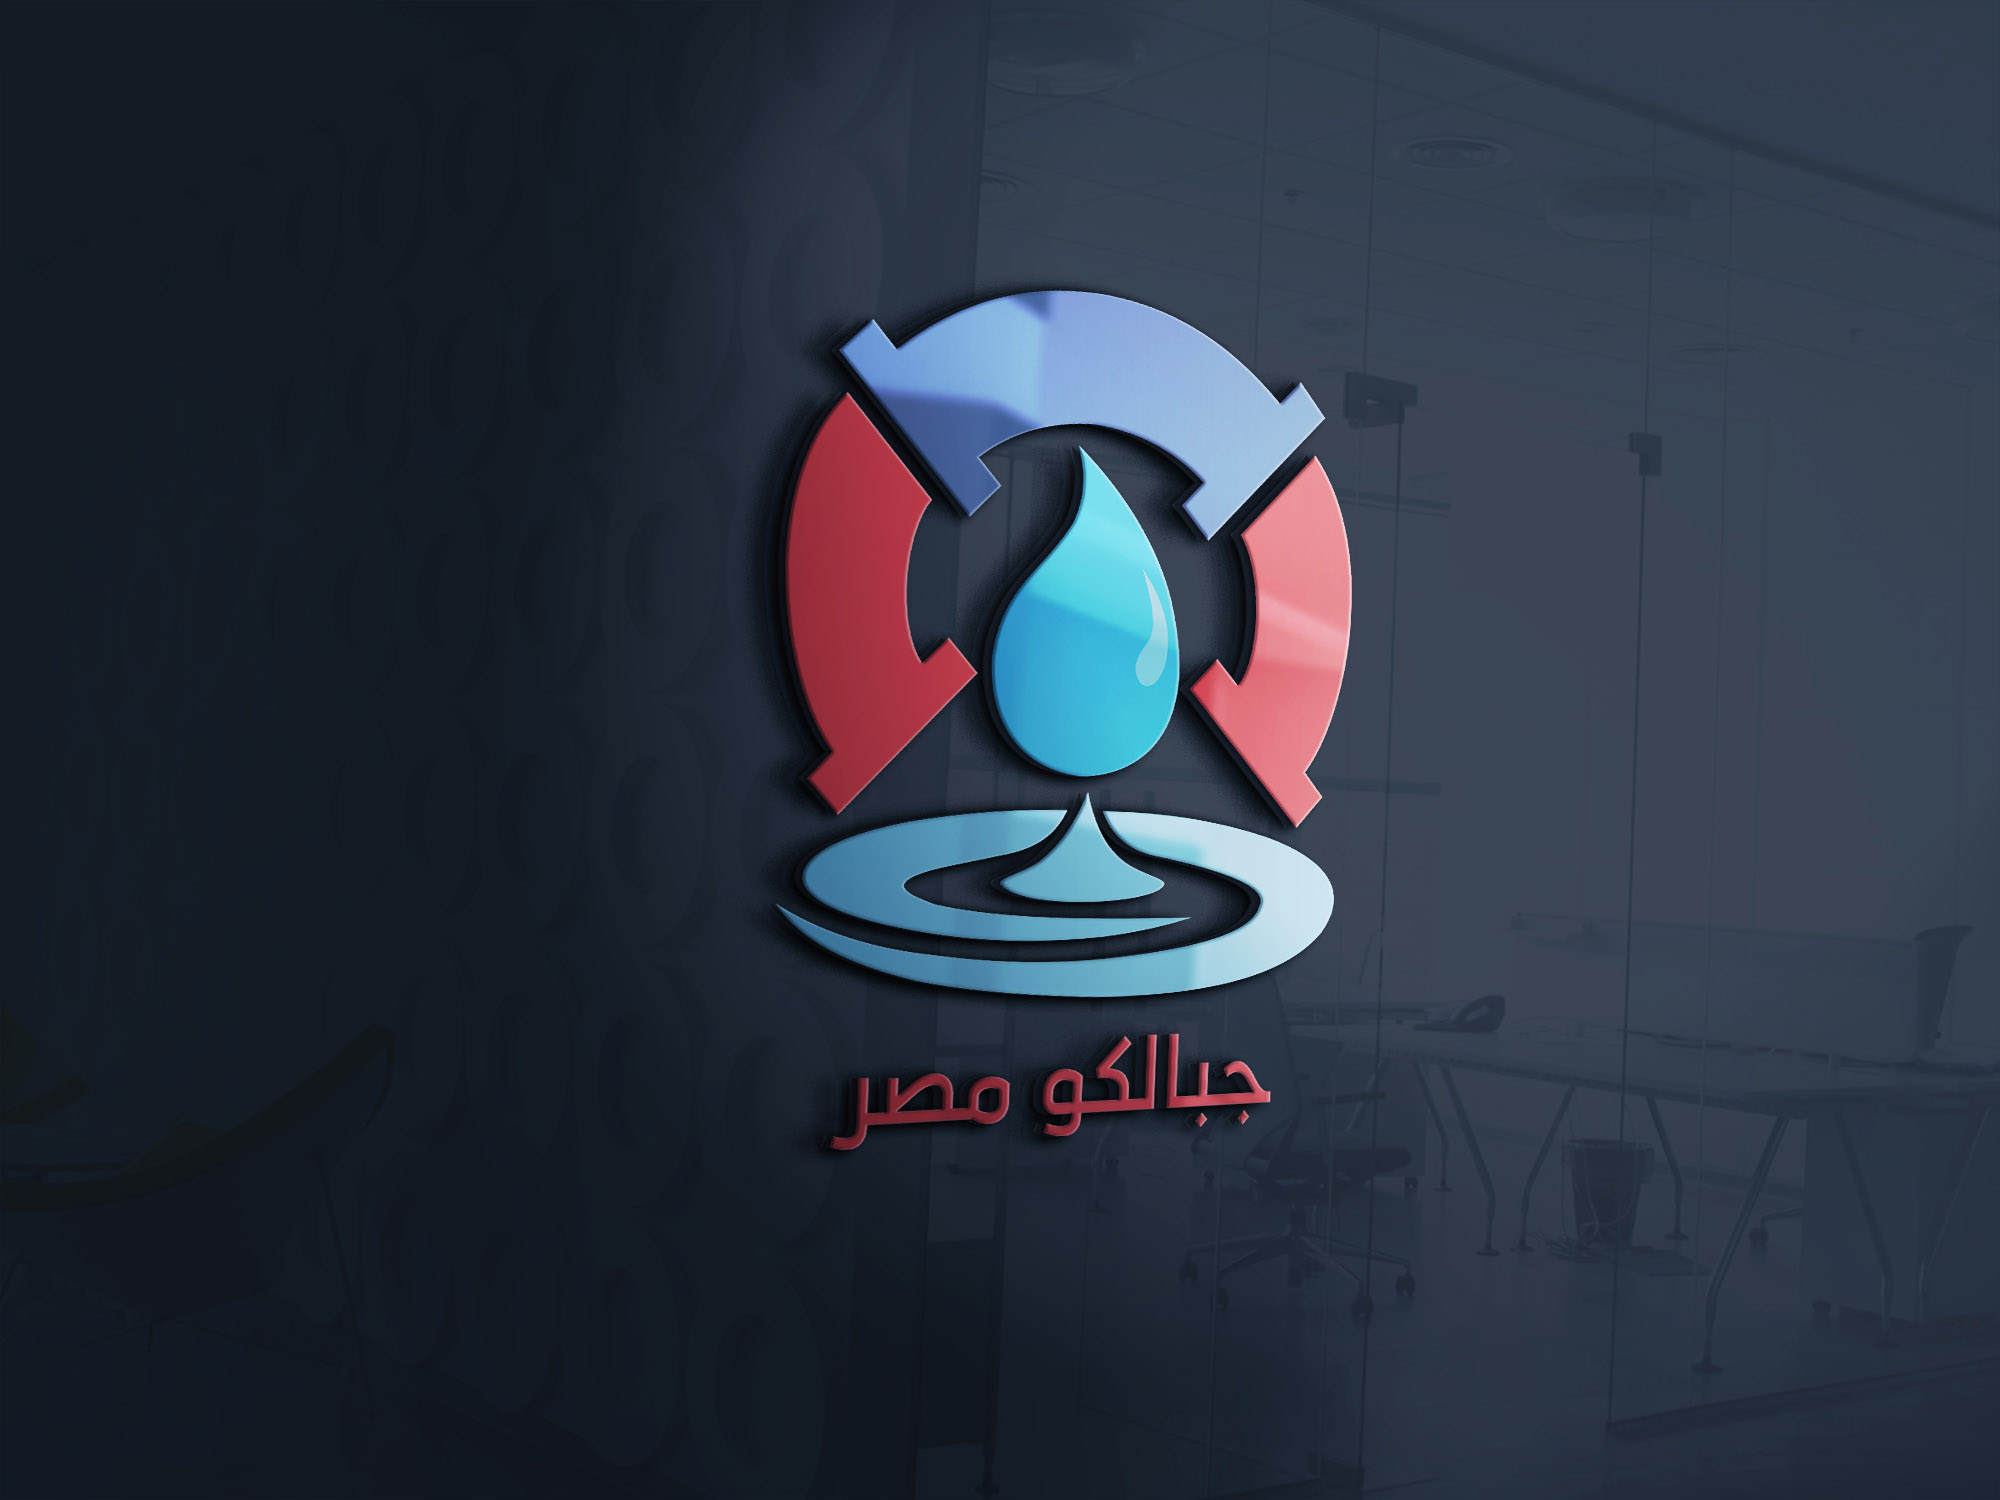 موكاب تصميم شعار لوجو شركة جبالكو مصر للصرف الصحي 1